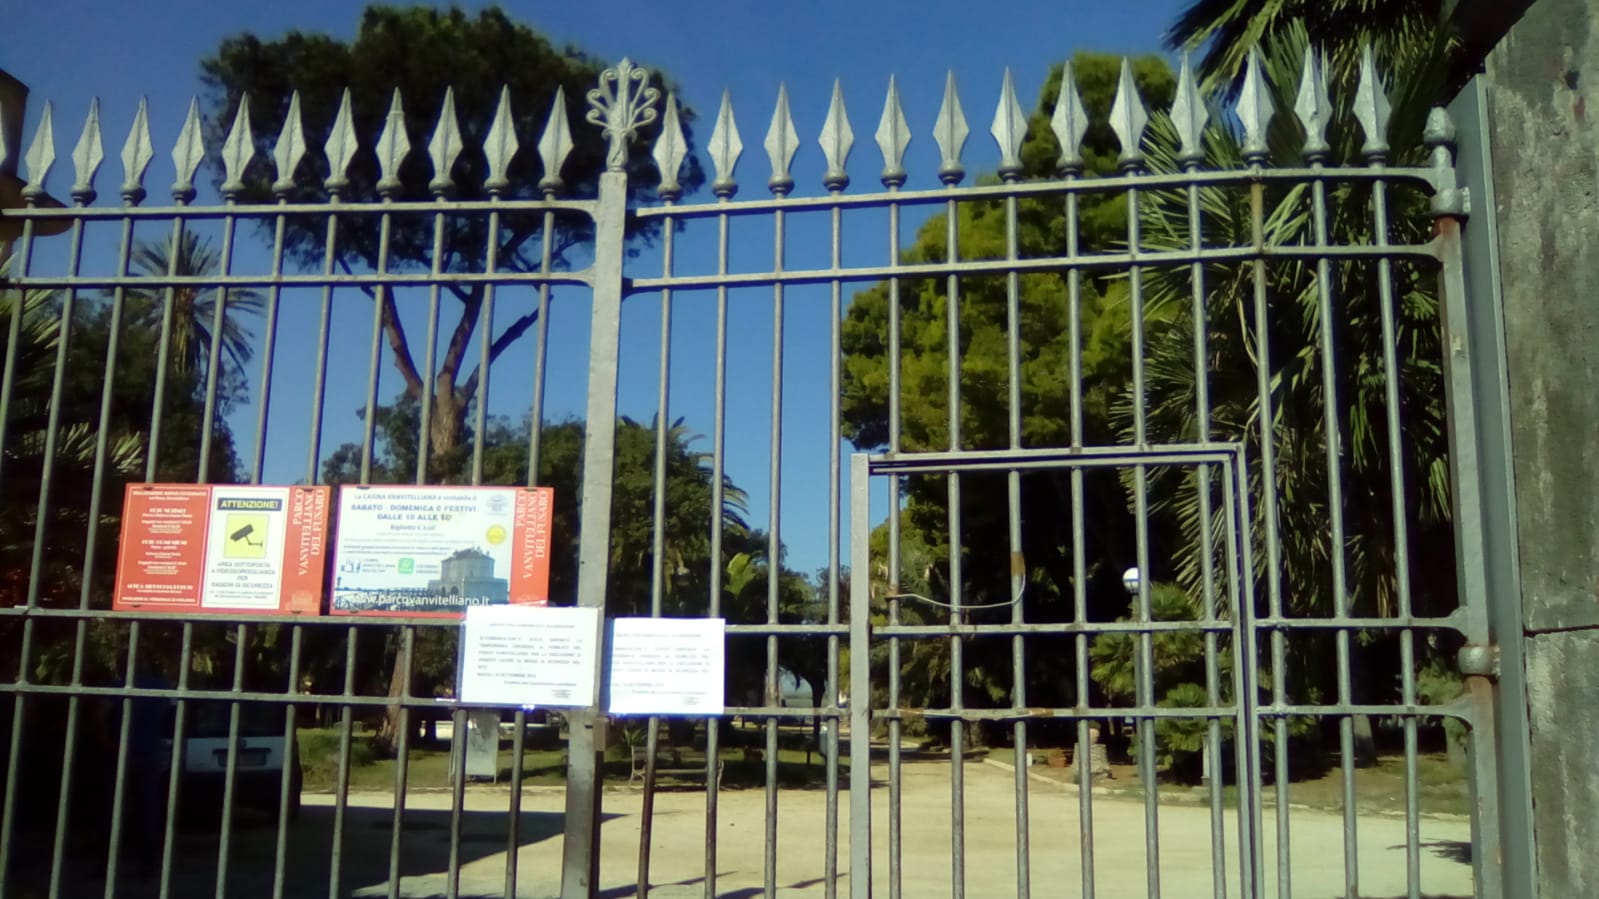 Parco Vanvitelliano chiuso, il Pd: “Il commissario garantisca la sicurezza e la veloce riapertura”